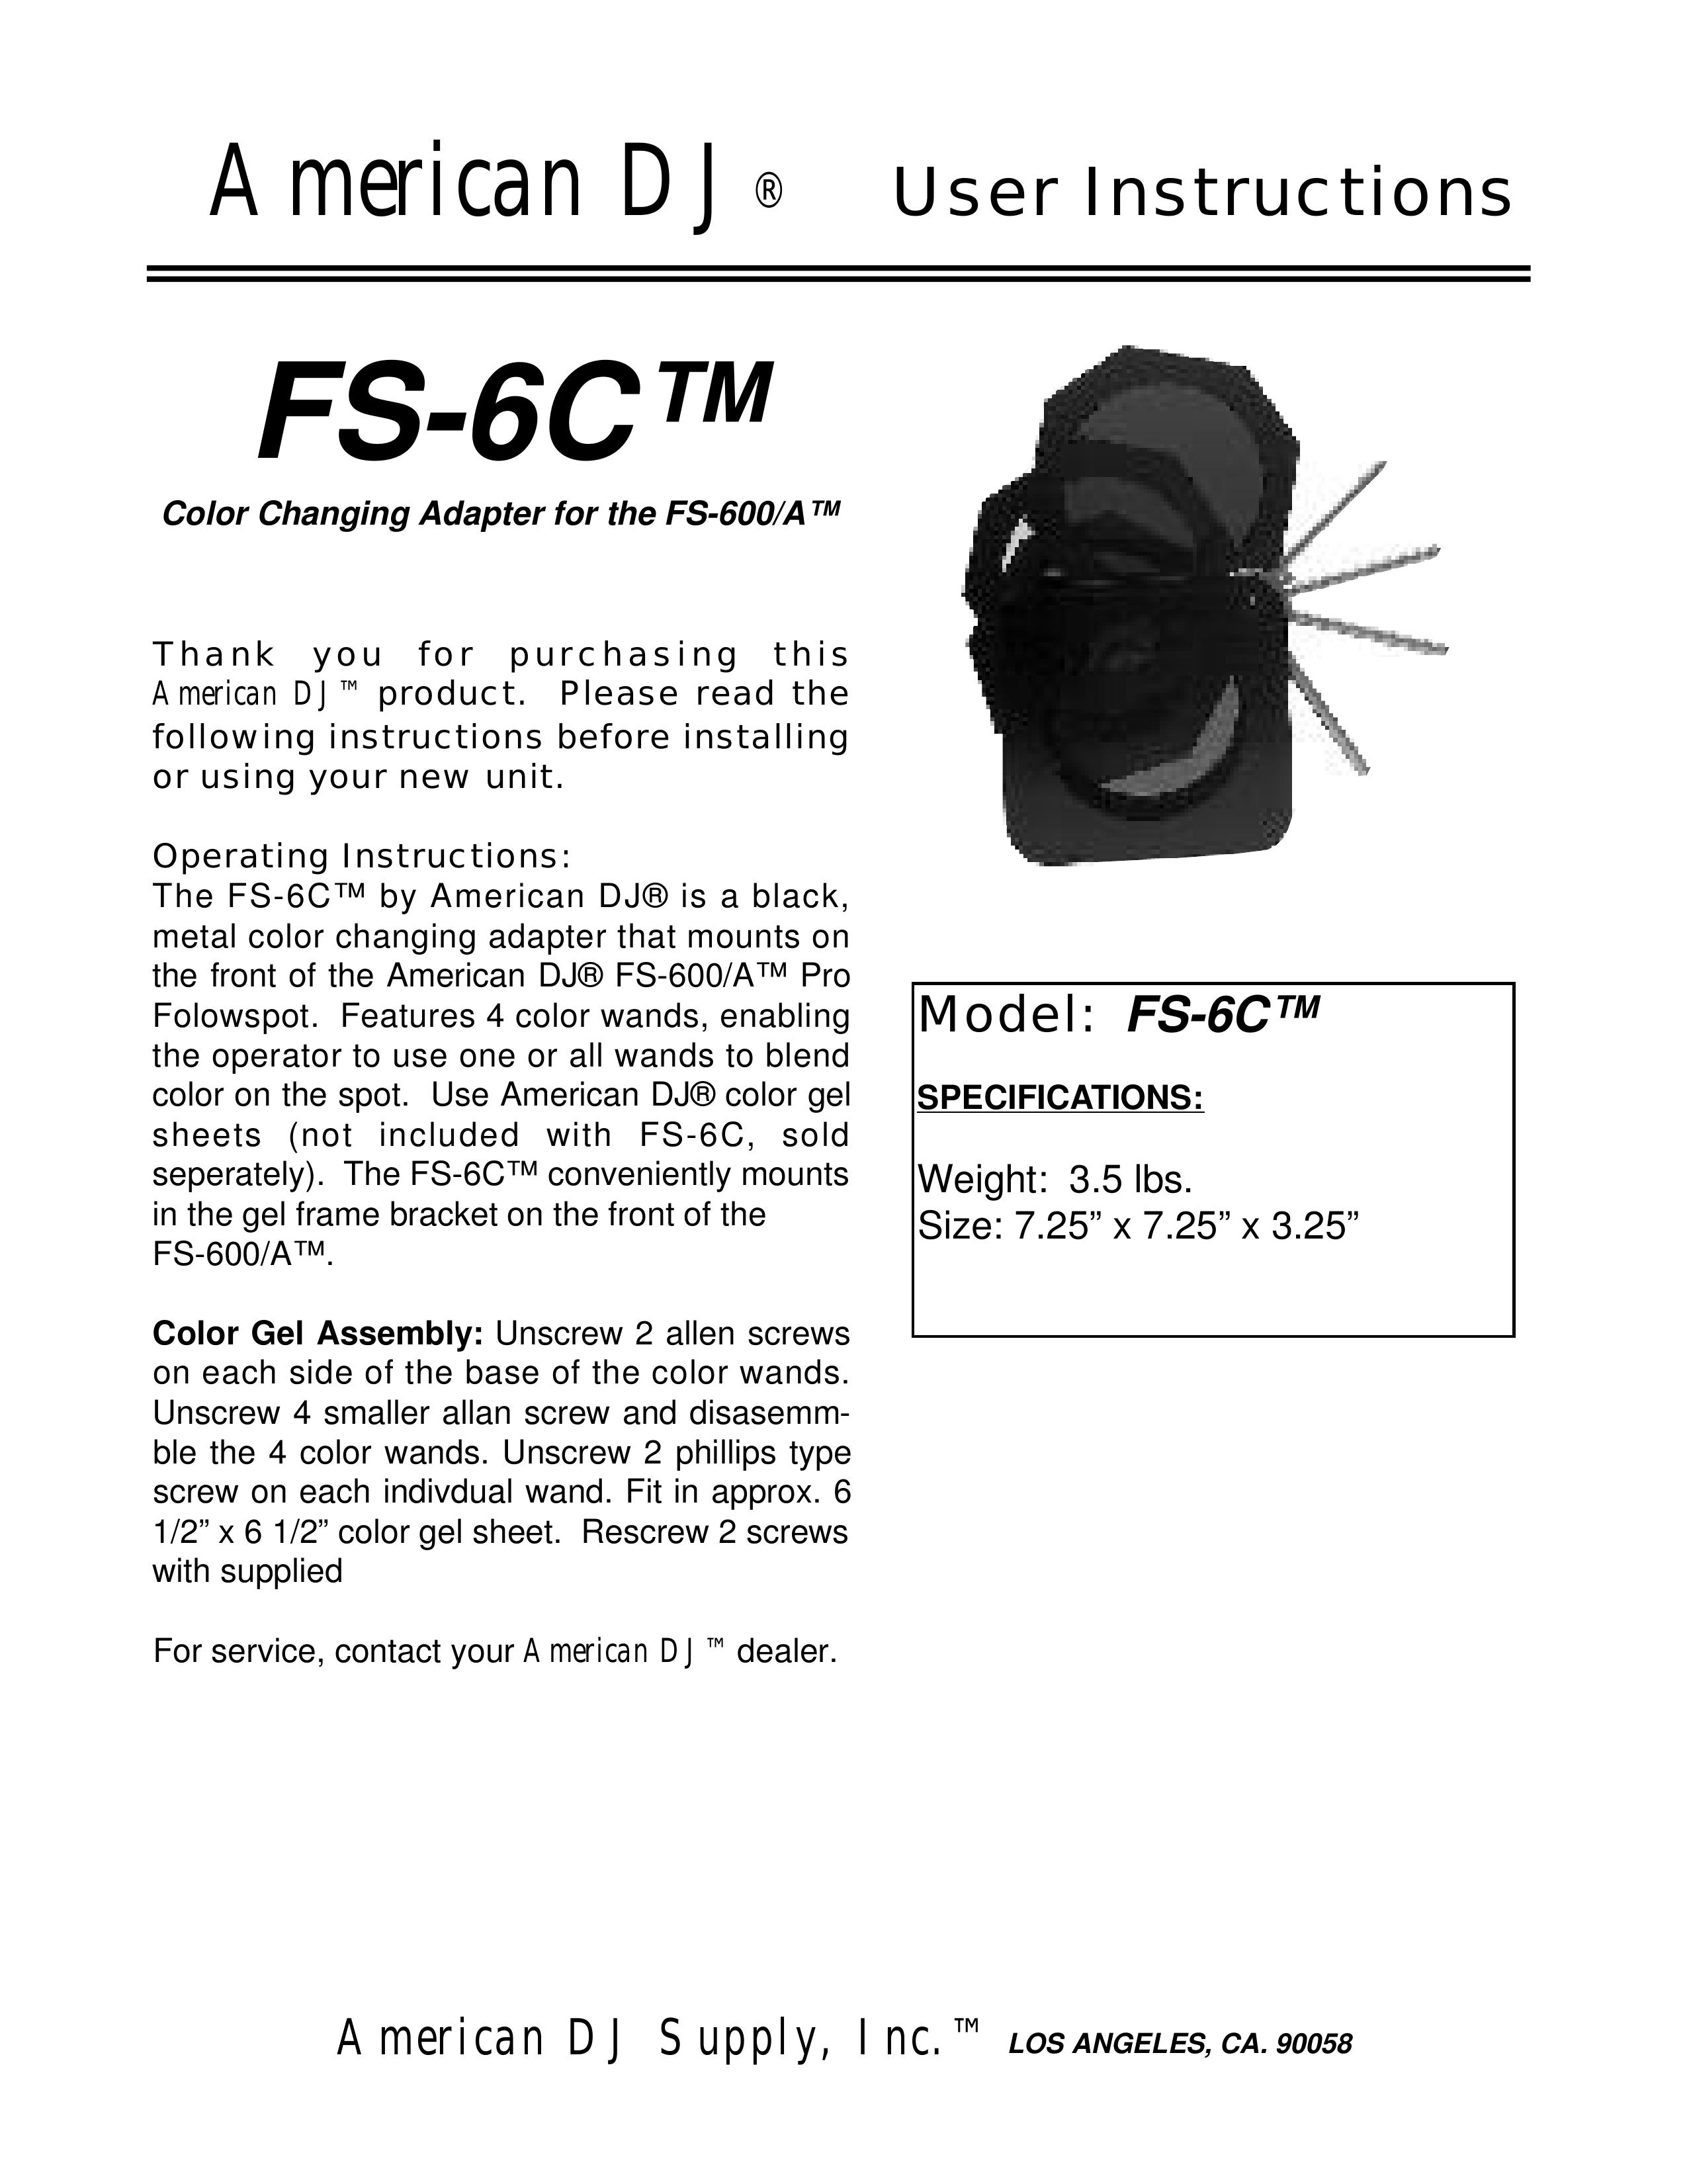 American DJ FS-6C DJ Equipment User Manual (Page 1)